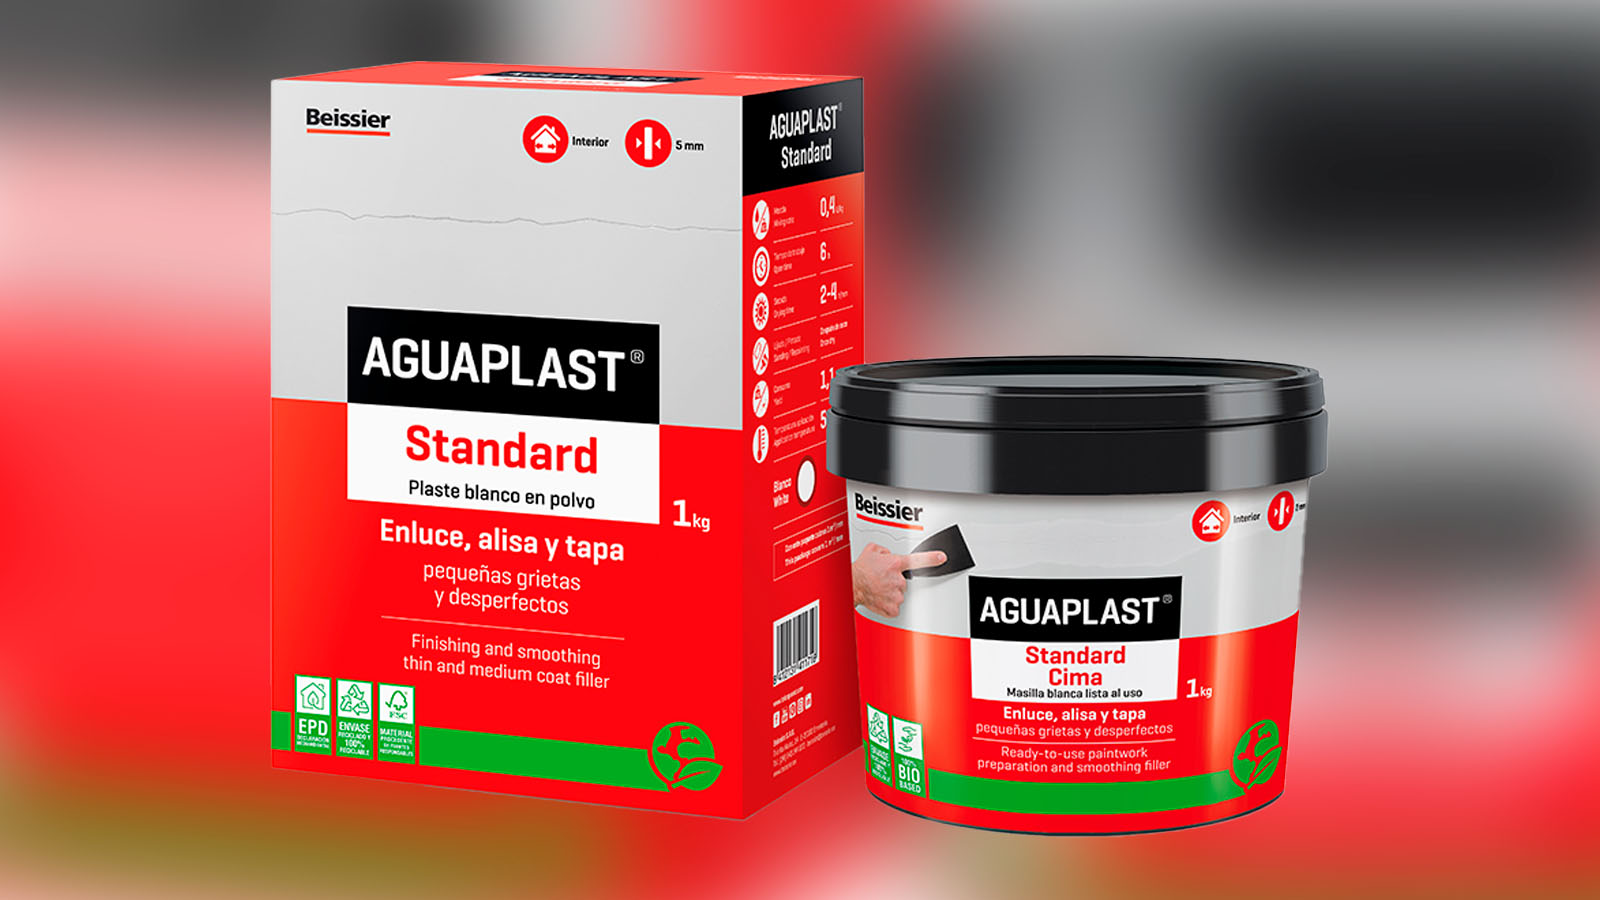 Aguaplast incorpora una nueva EPD para 4 productos de su gama de plastes -  Ferretería